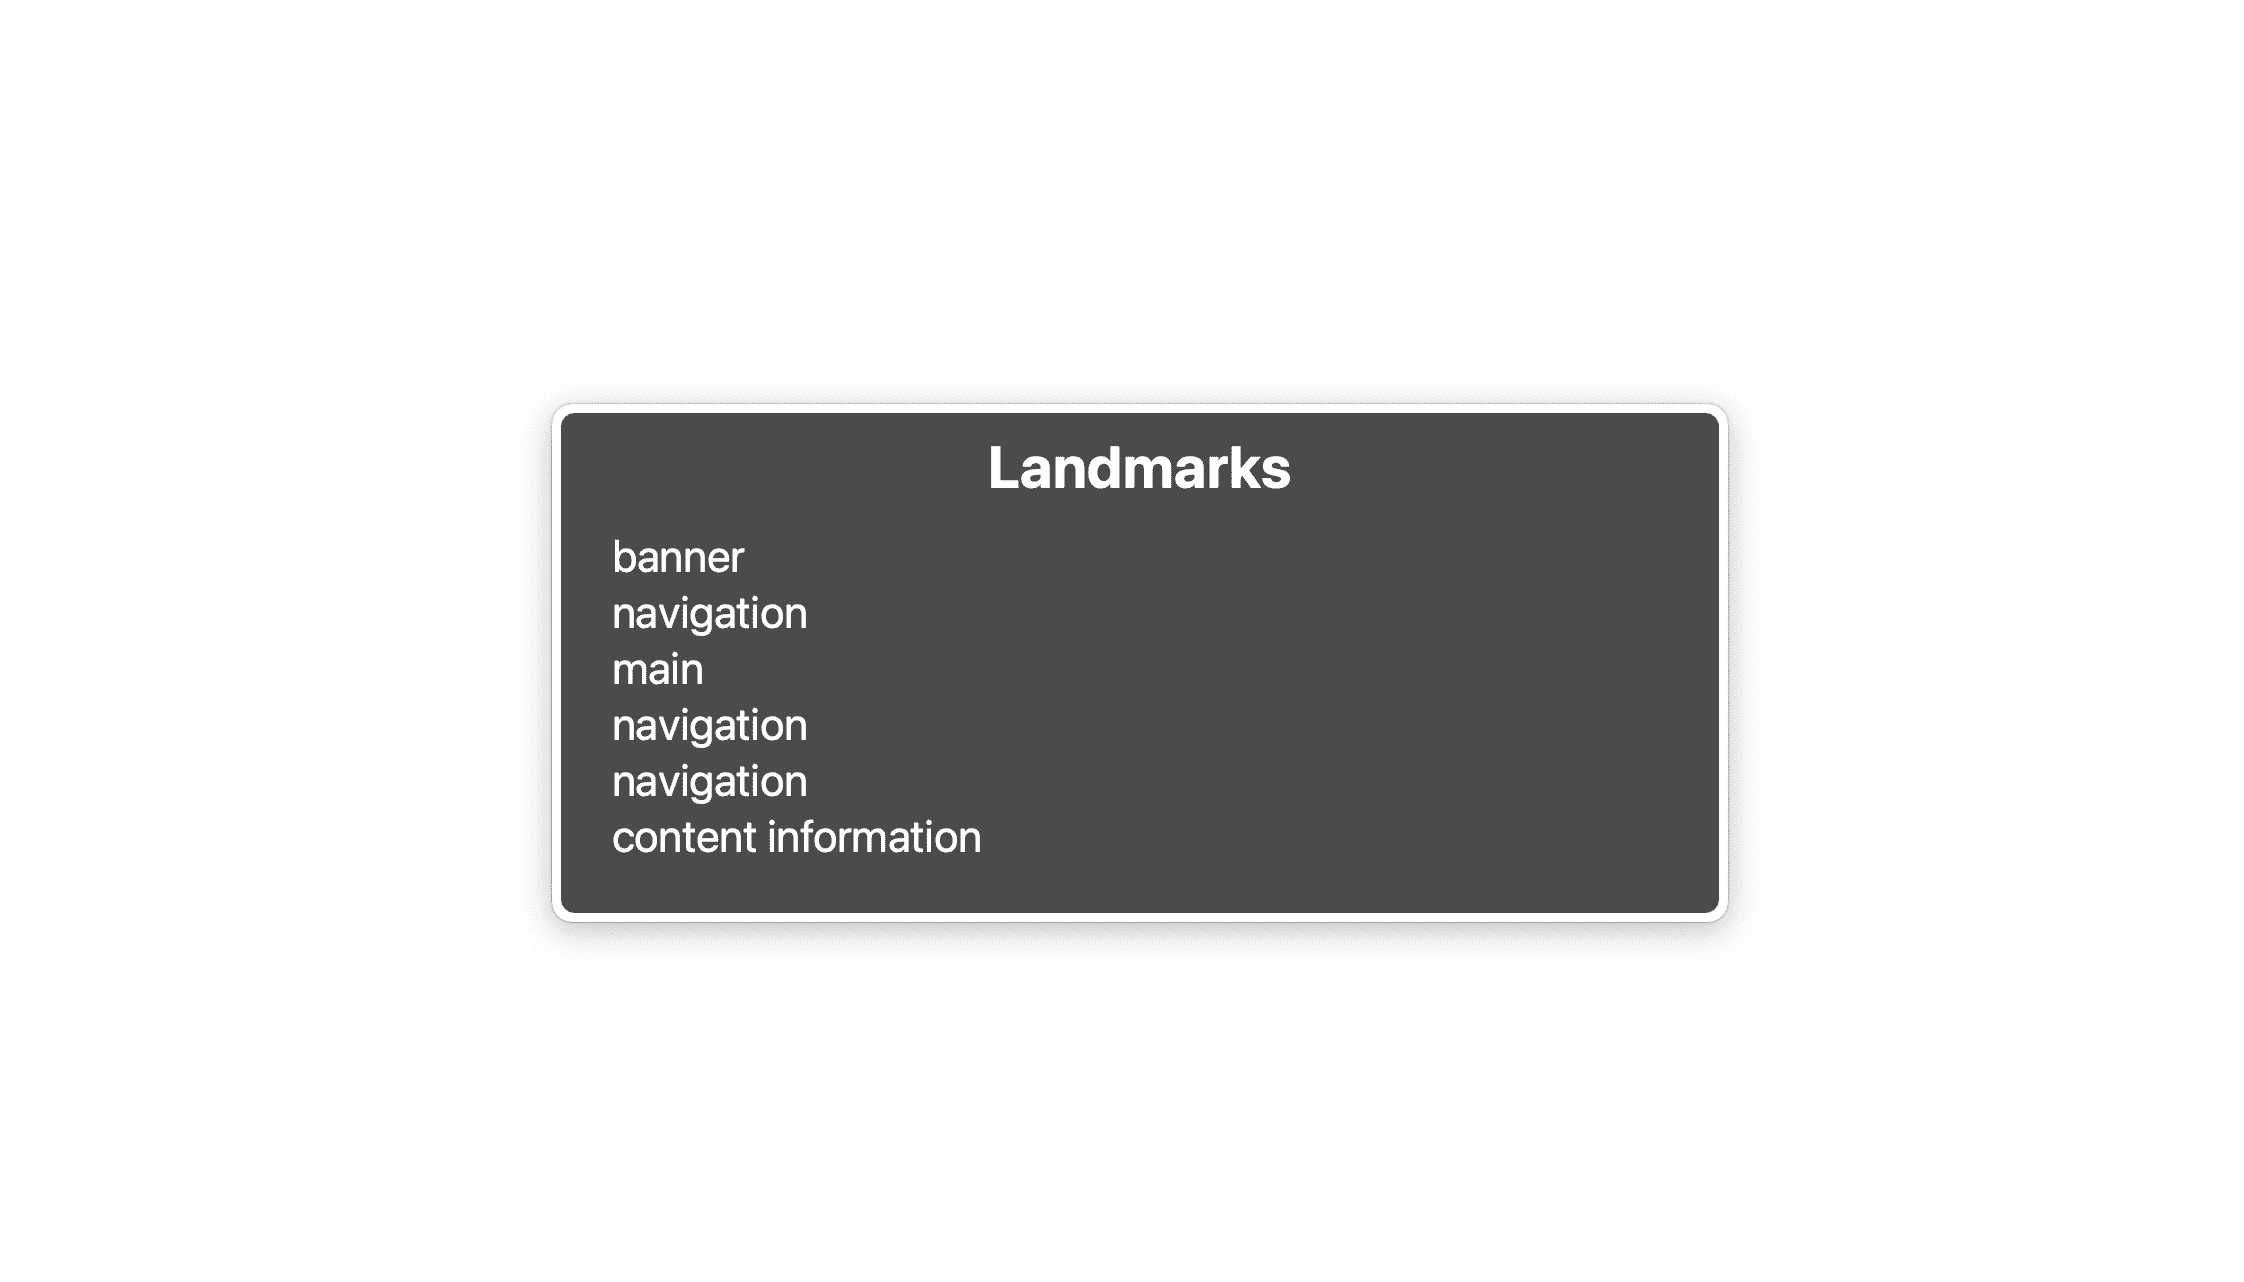 Bild mit drei Orientierungspunkten, auf denen alle „Navigation“ steht.